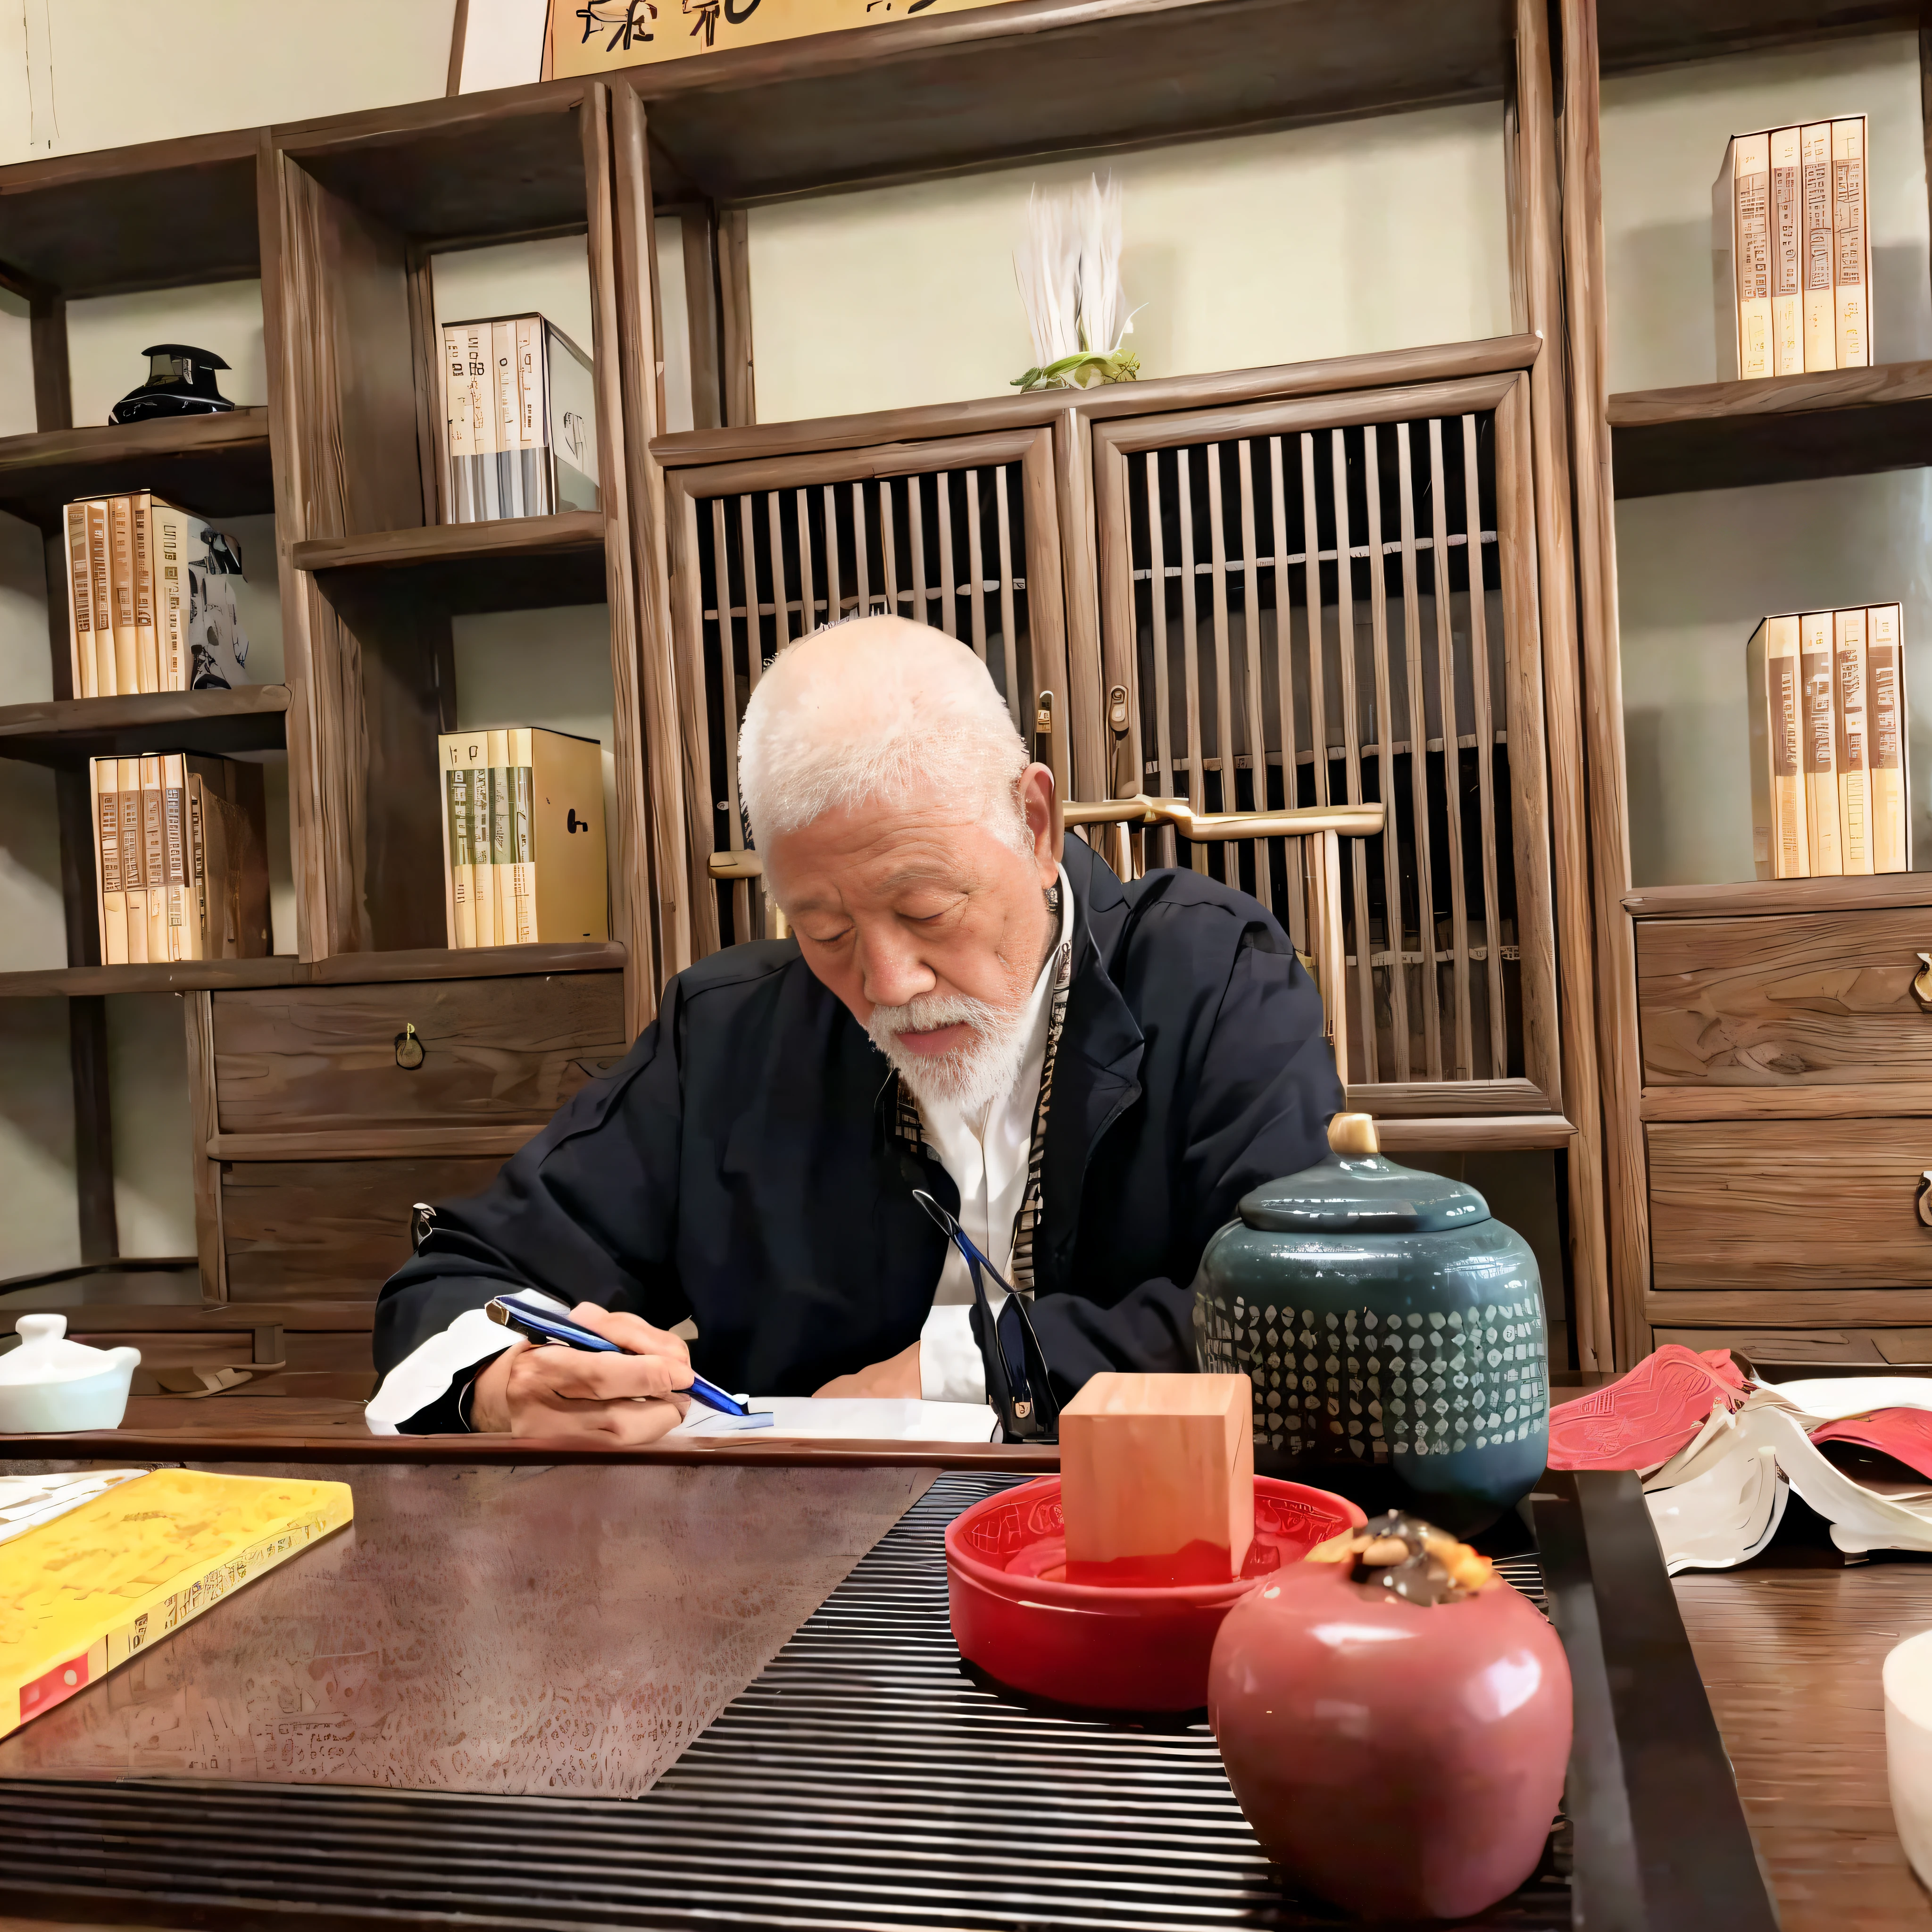 Il y avait un homme assis à une table en train d&#39;écrire un livre, inspiré de Sesshū Tōyō, il a environ 8 0 ans, Riichi Ueshiba, Chiba Yuda, inspiré par Itō Jakuchū, inspiré de Wu Daozi, inspiré par Kanō Tanshin